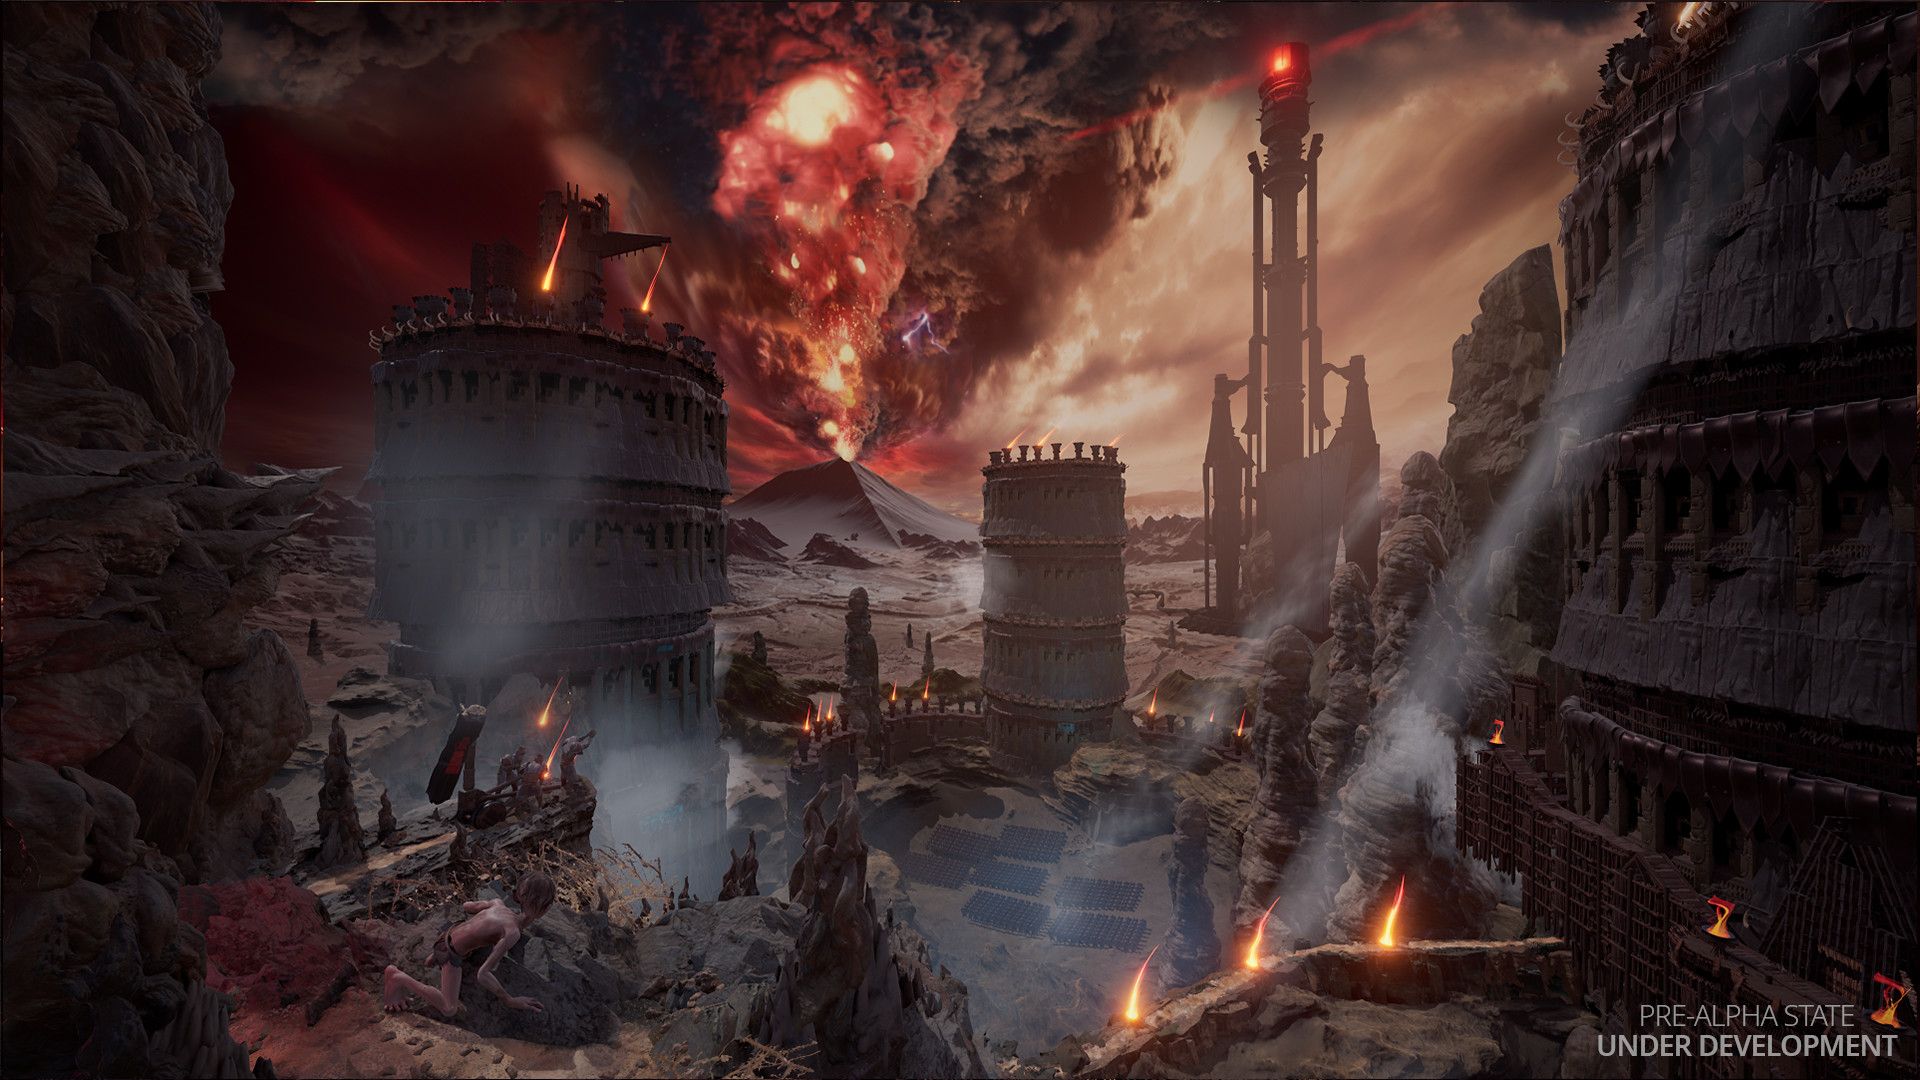 Gollum overlooks a dark and dangerous landscape, Sauron can be seen.